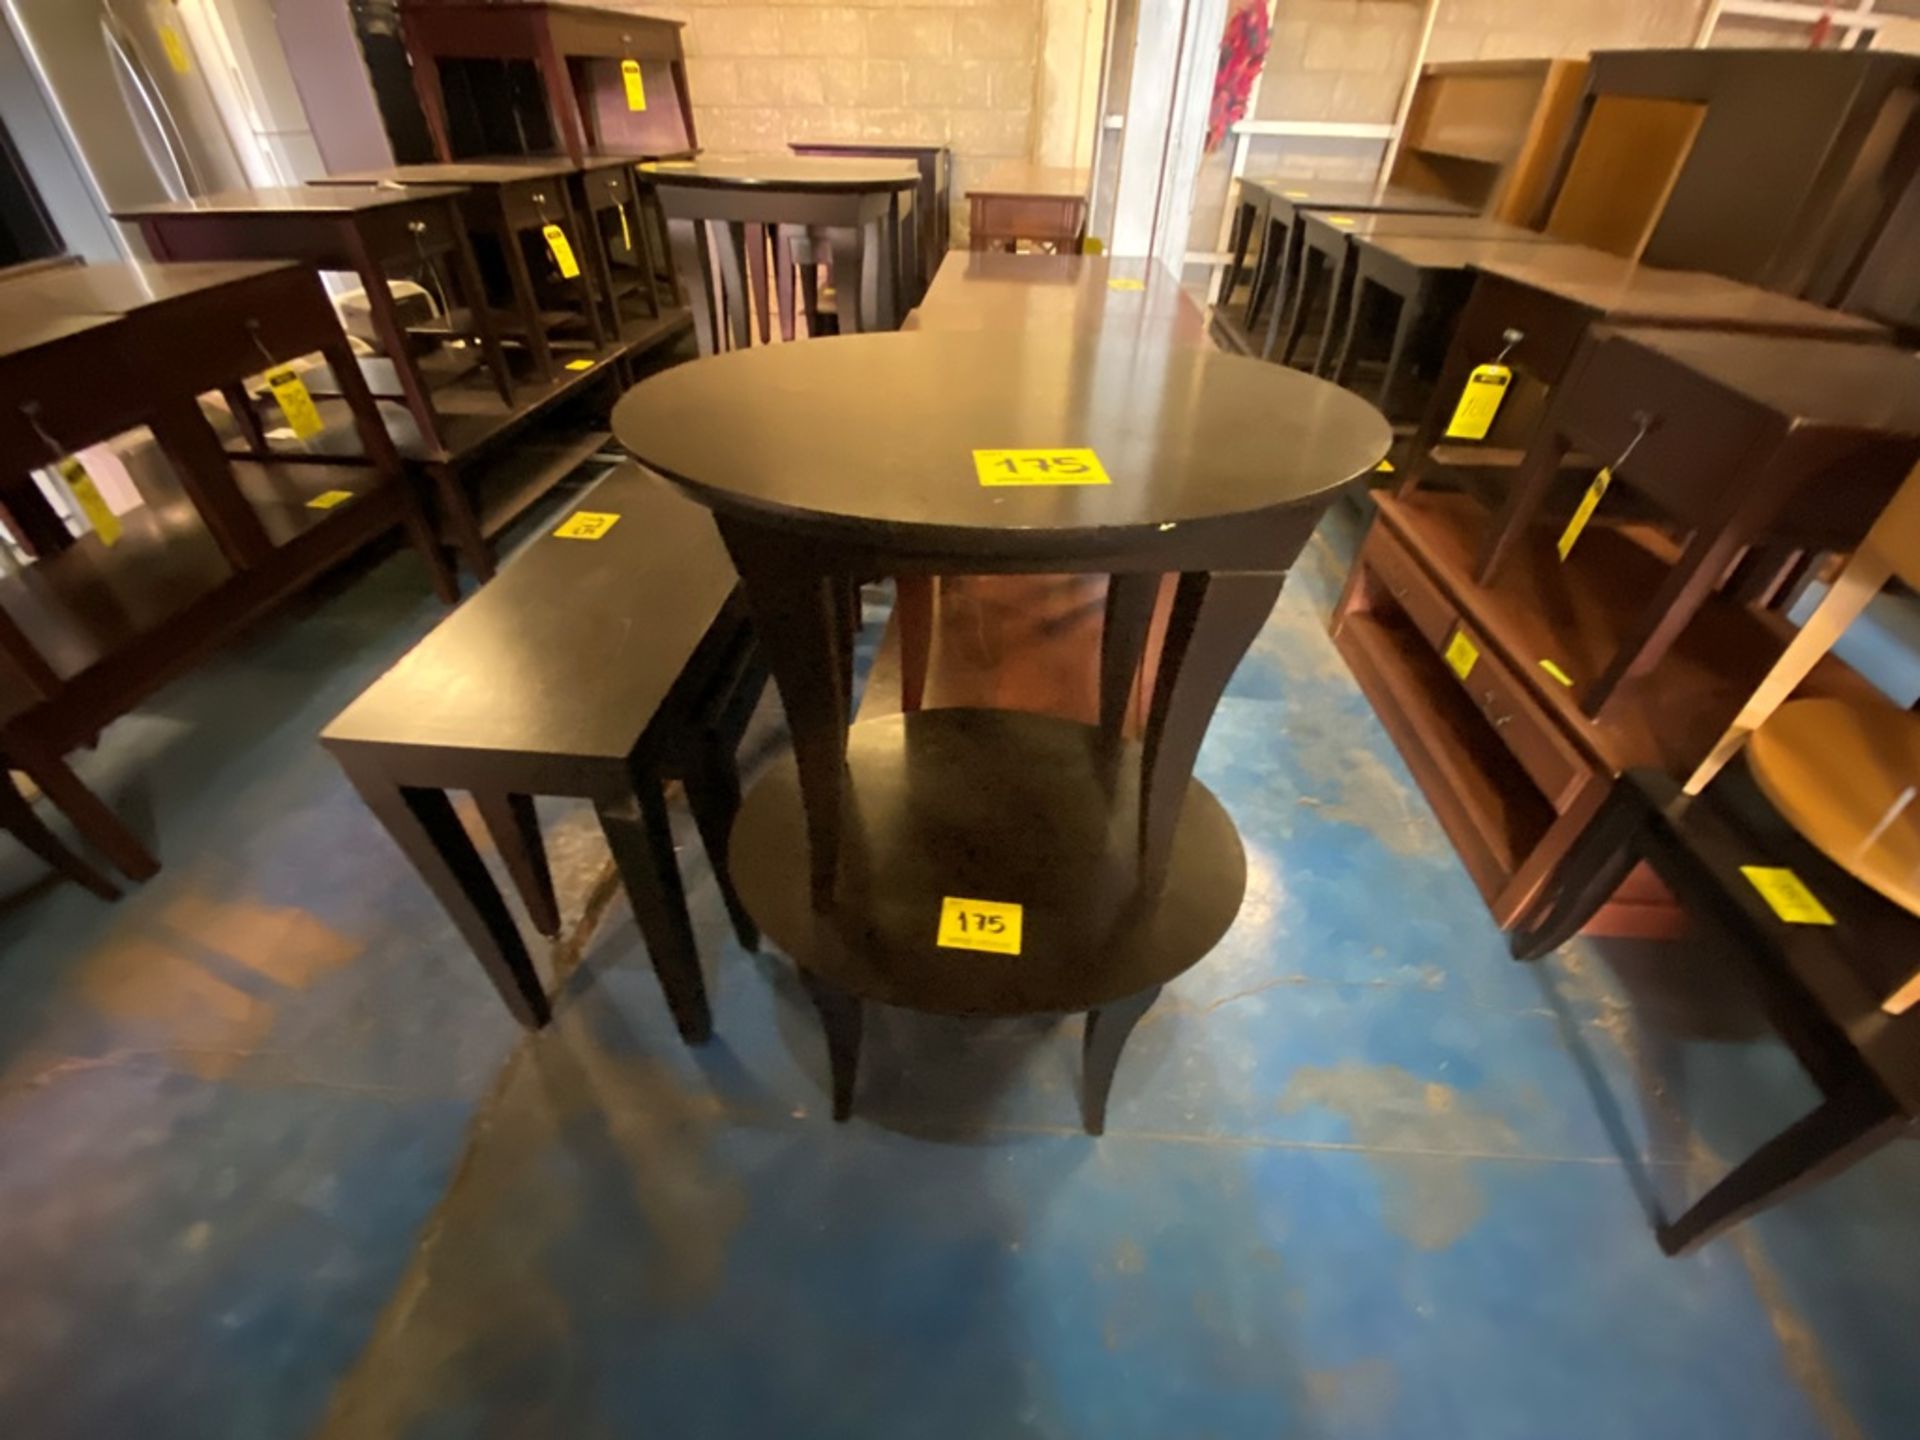 Lote Conformado por 2 mesas, Contiene; 1 Mesa Tipo Esquinero Ovalada de Madera Color Café 70x55x58